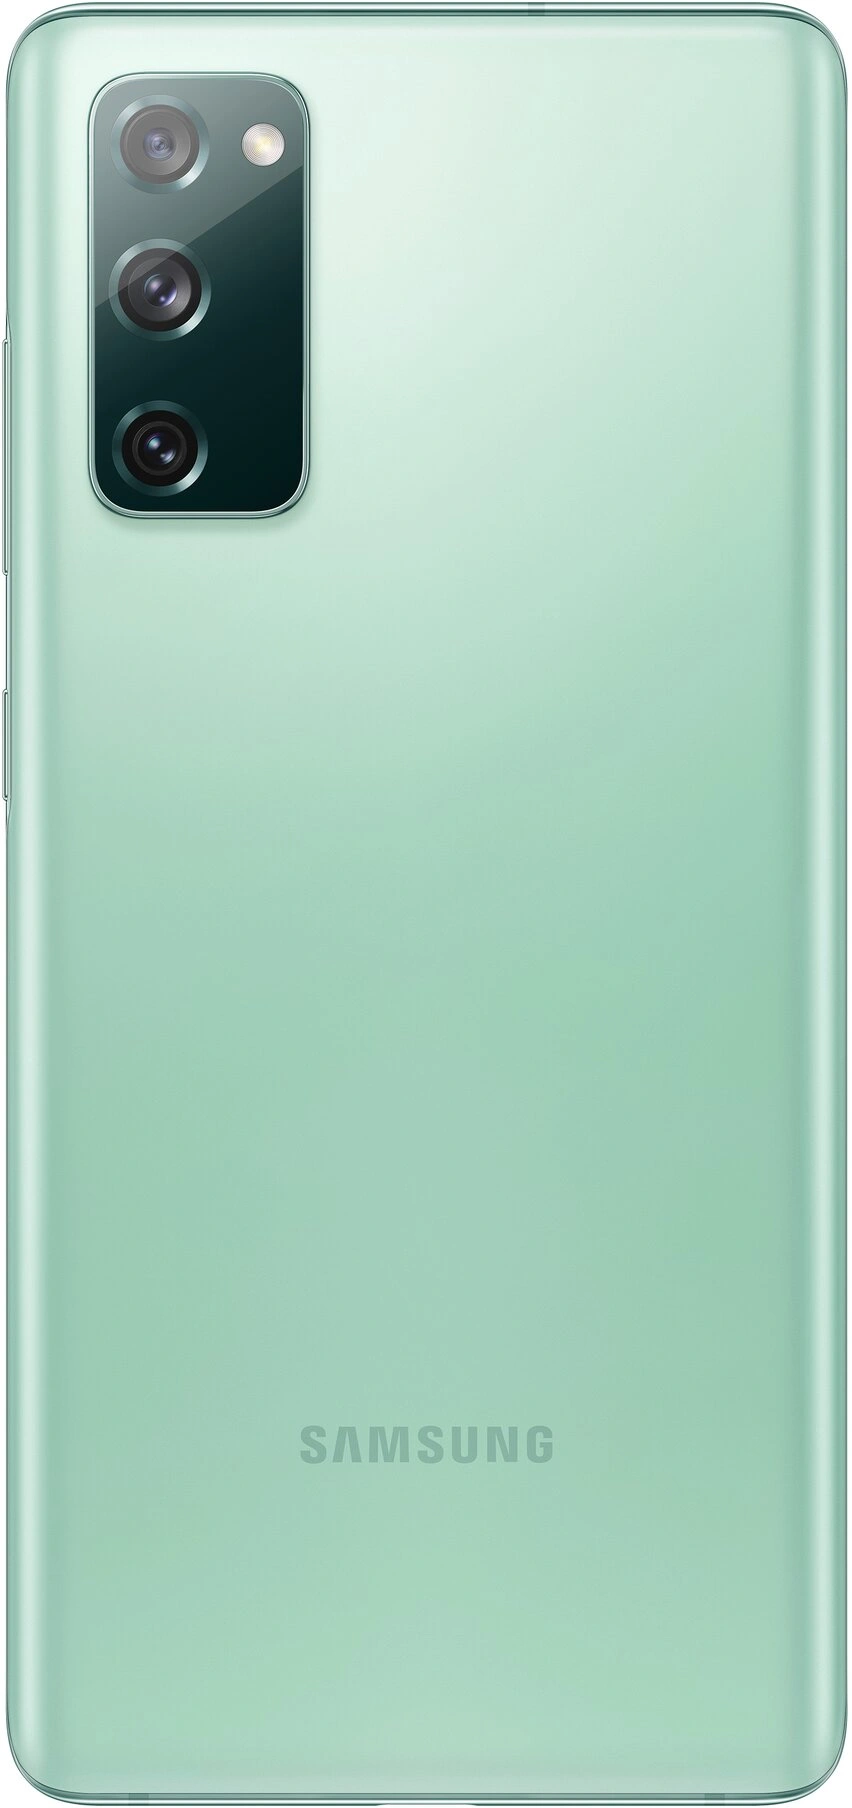 Samsung Galaxy S20 FE 6/128 GB, Green 